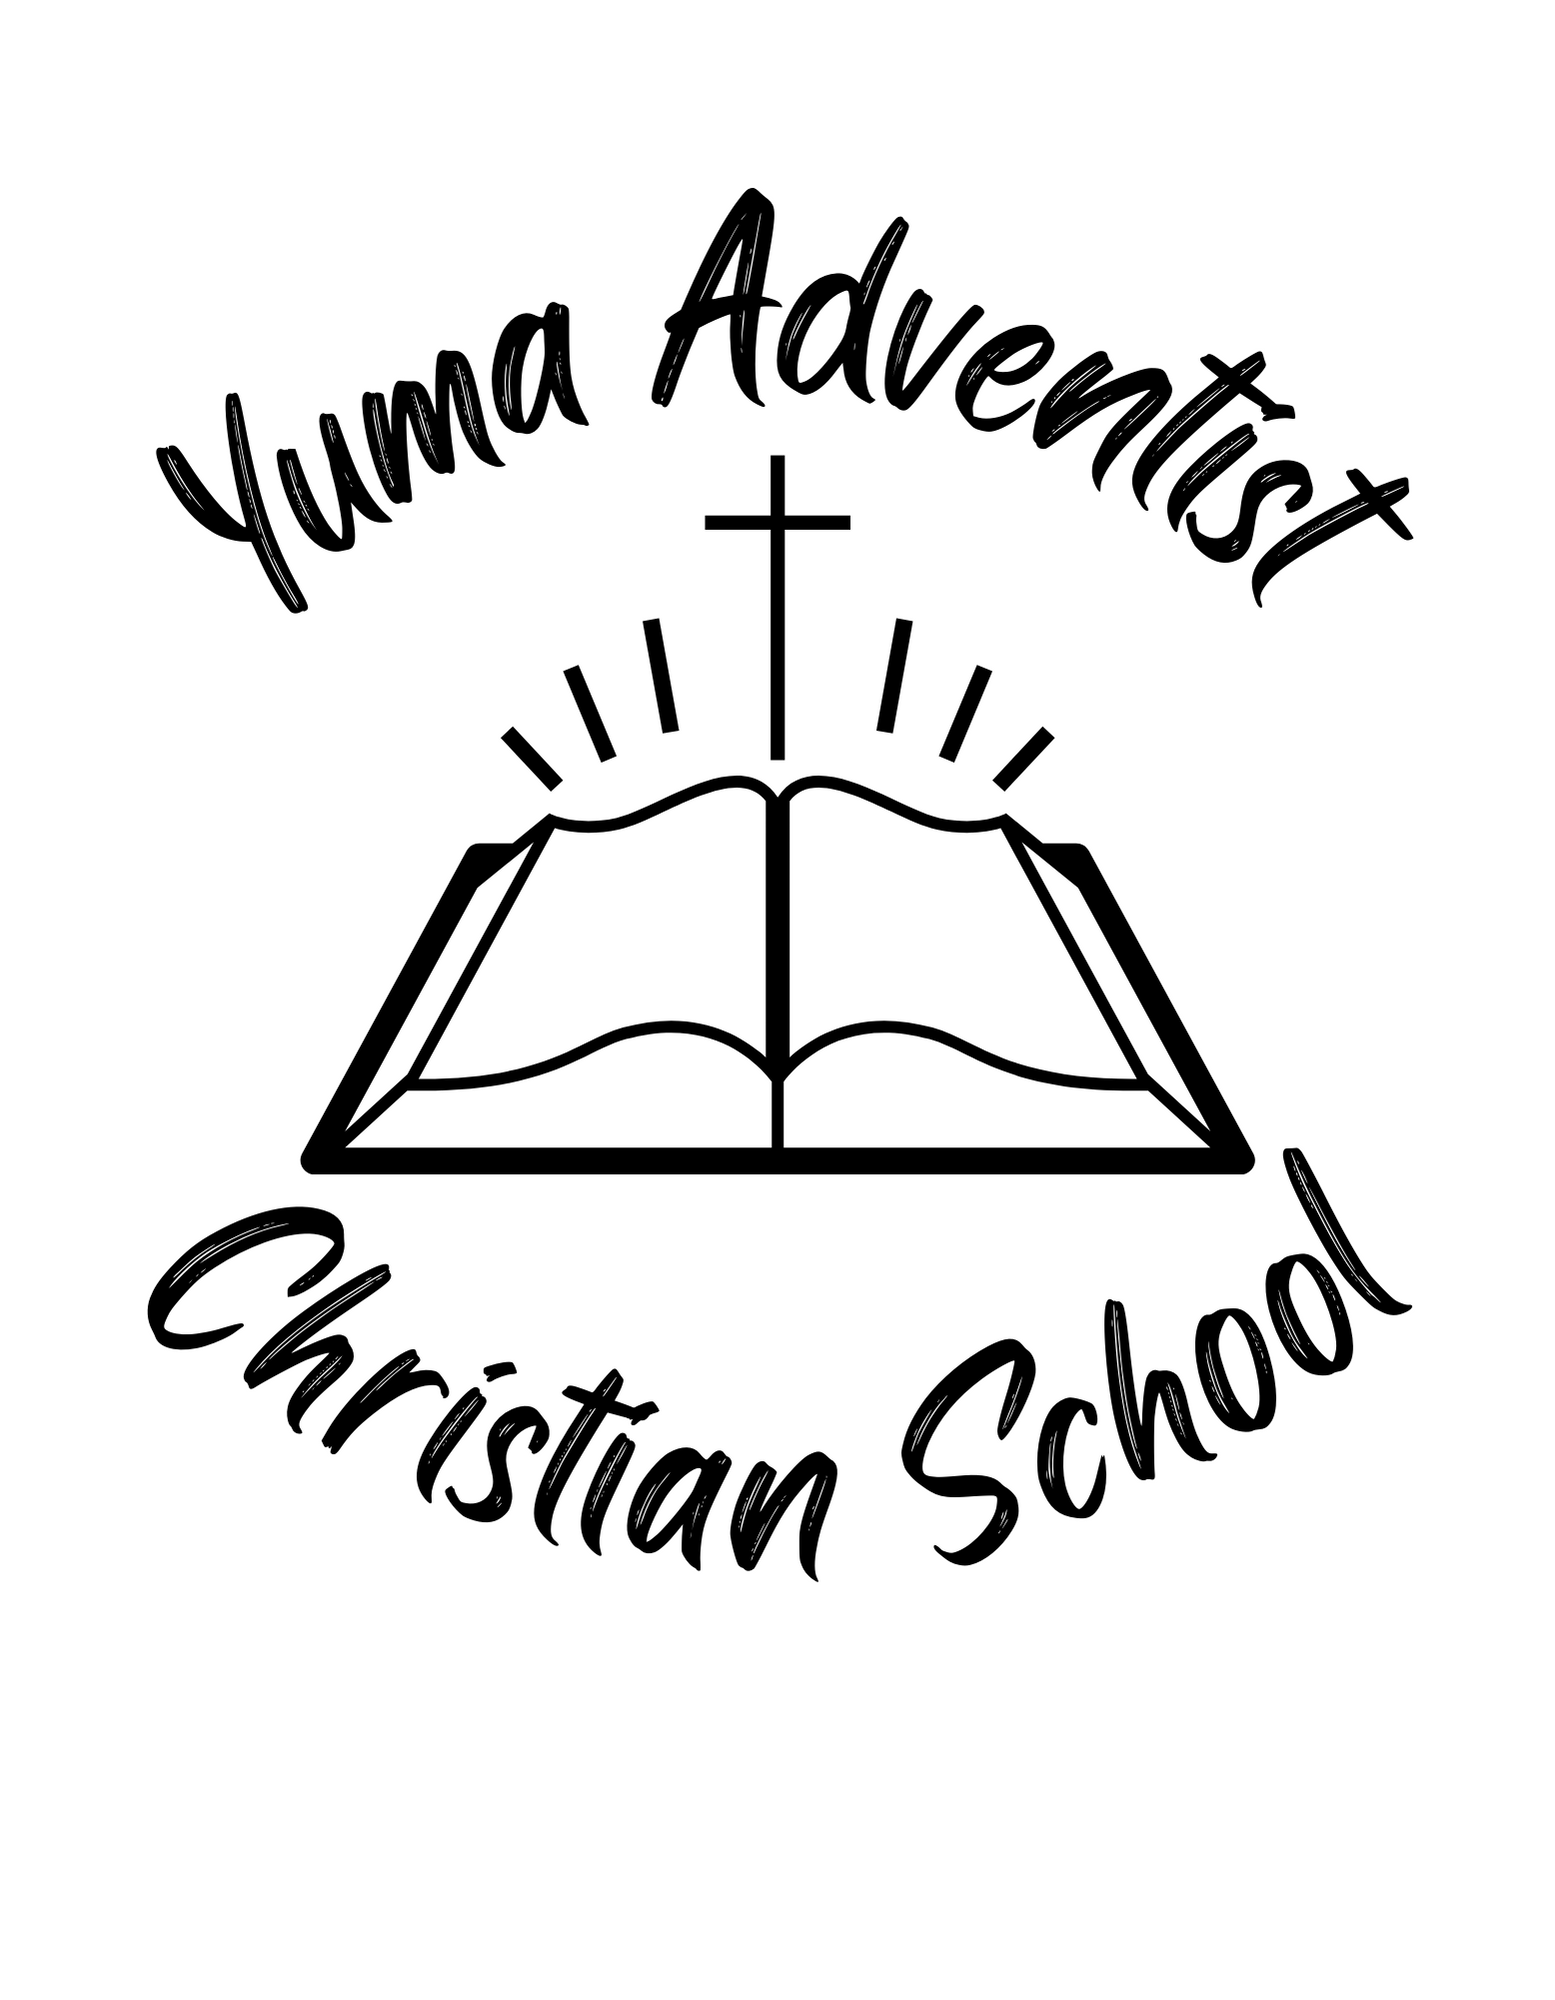 Yuma Adventist Christian School (2)